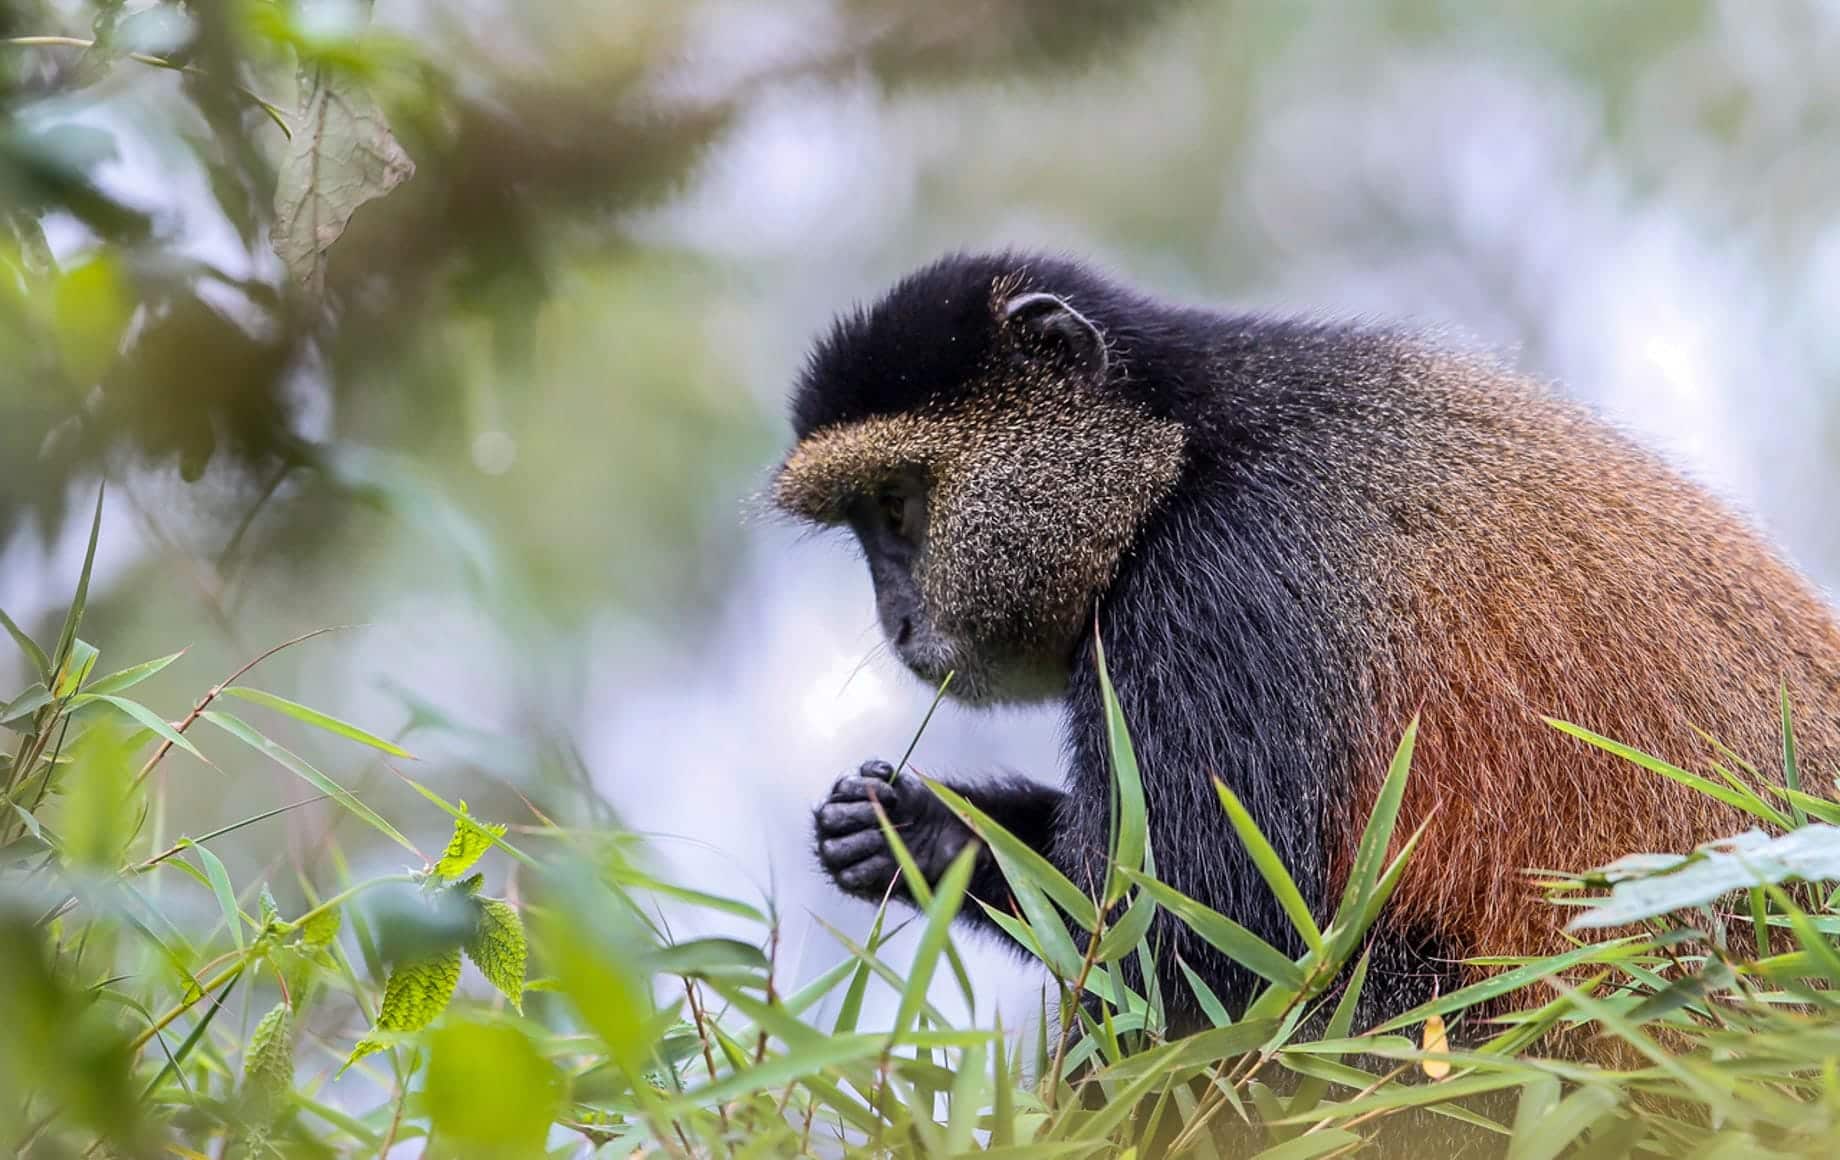 Monkey eating grass at Parc Nacional des Volcans, Rwanda